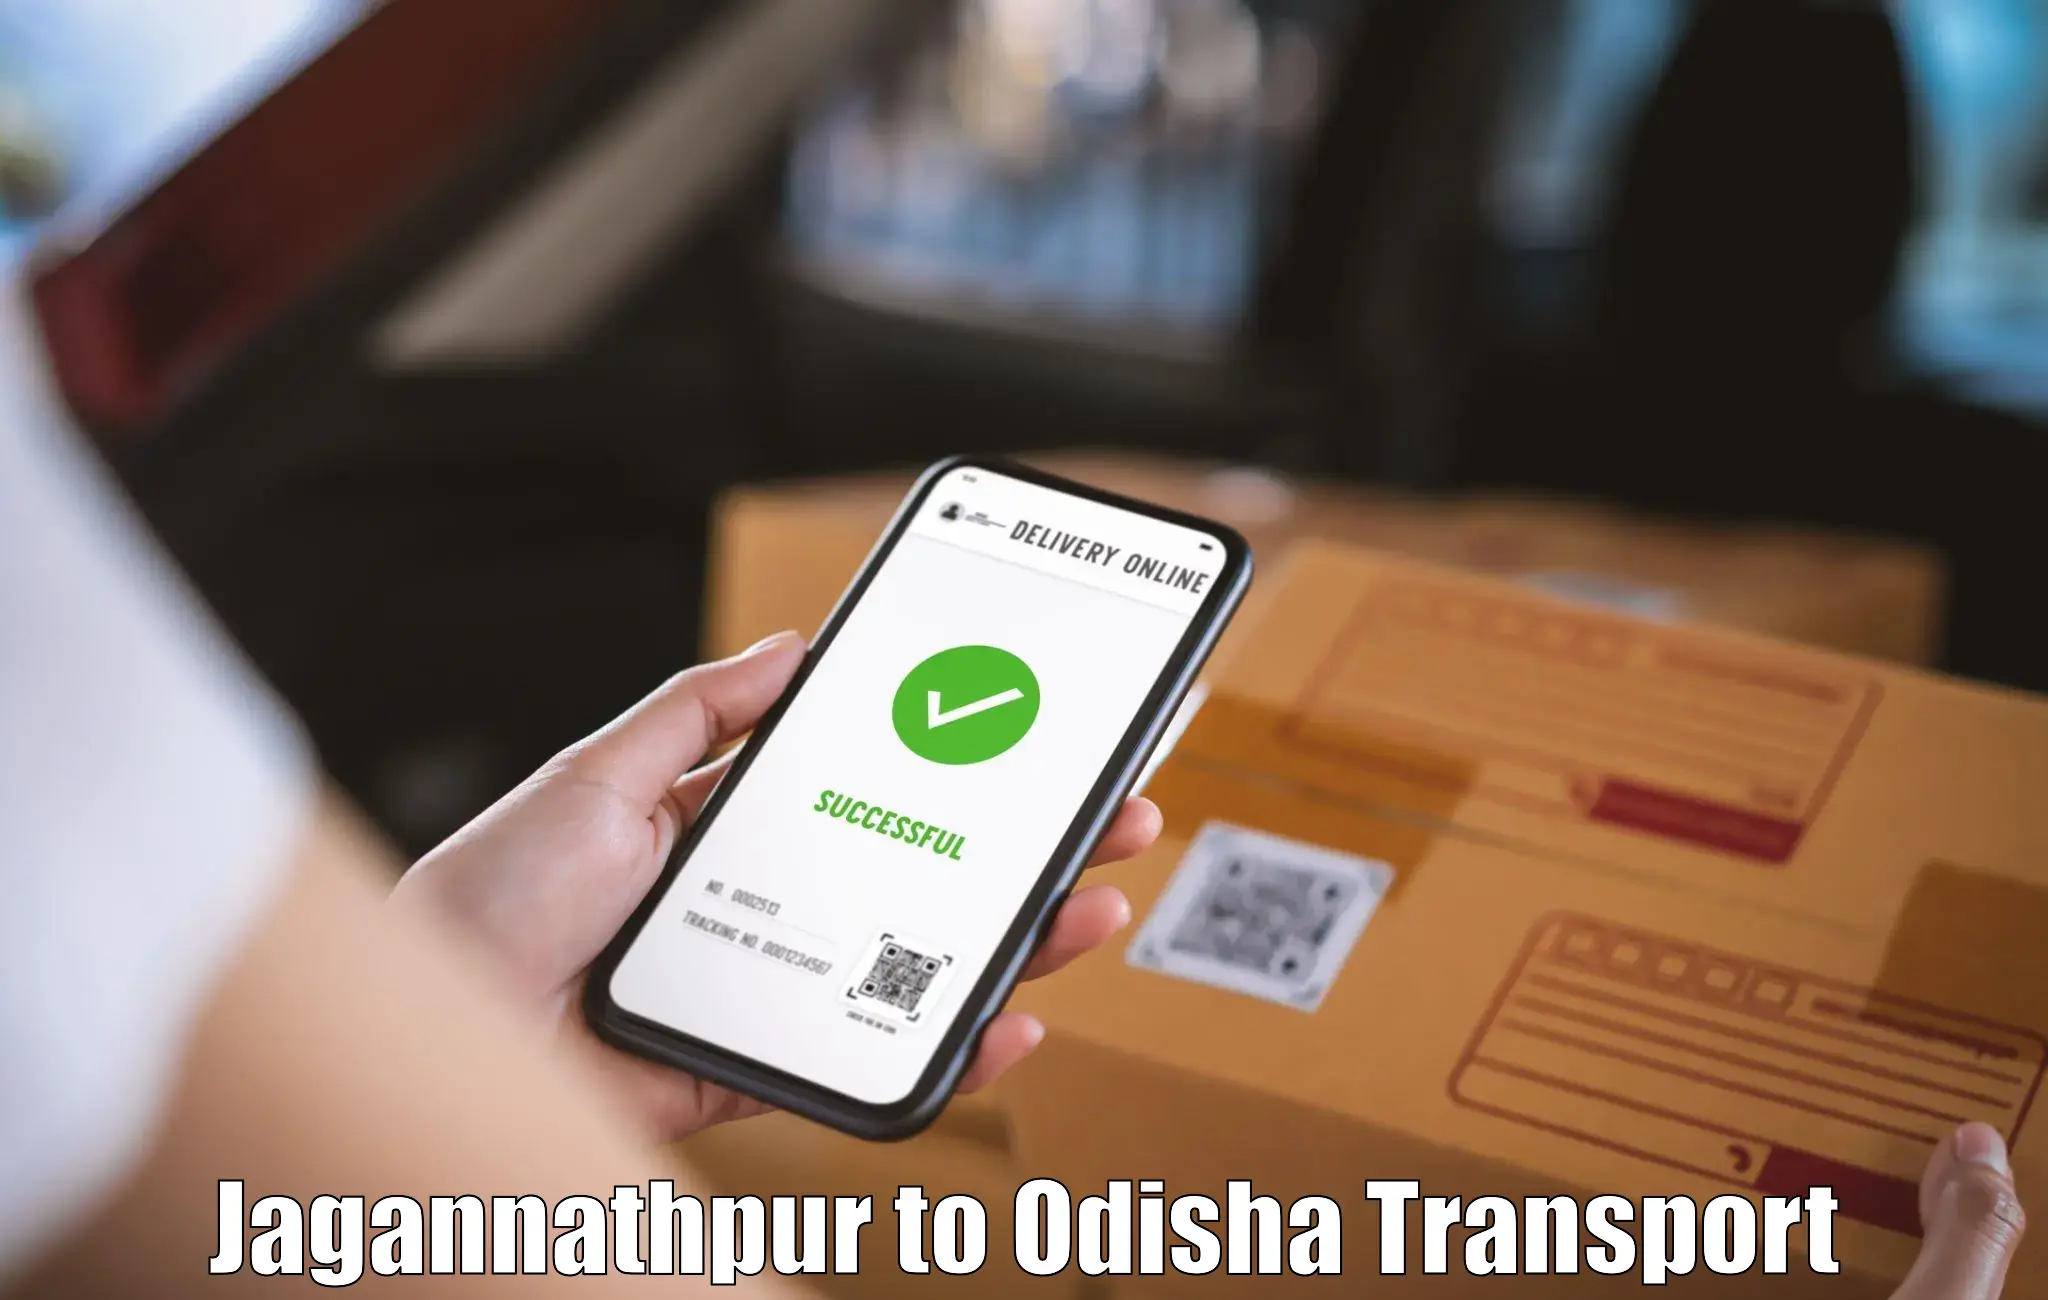 Transport in sharing Jagannathpur to Jagatpur